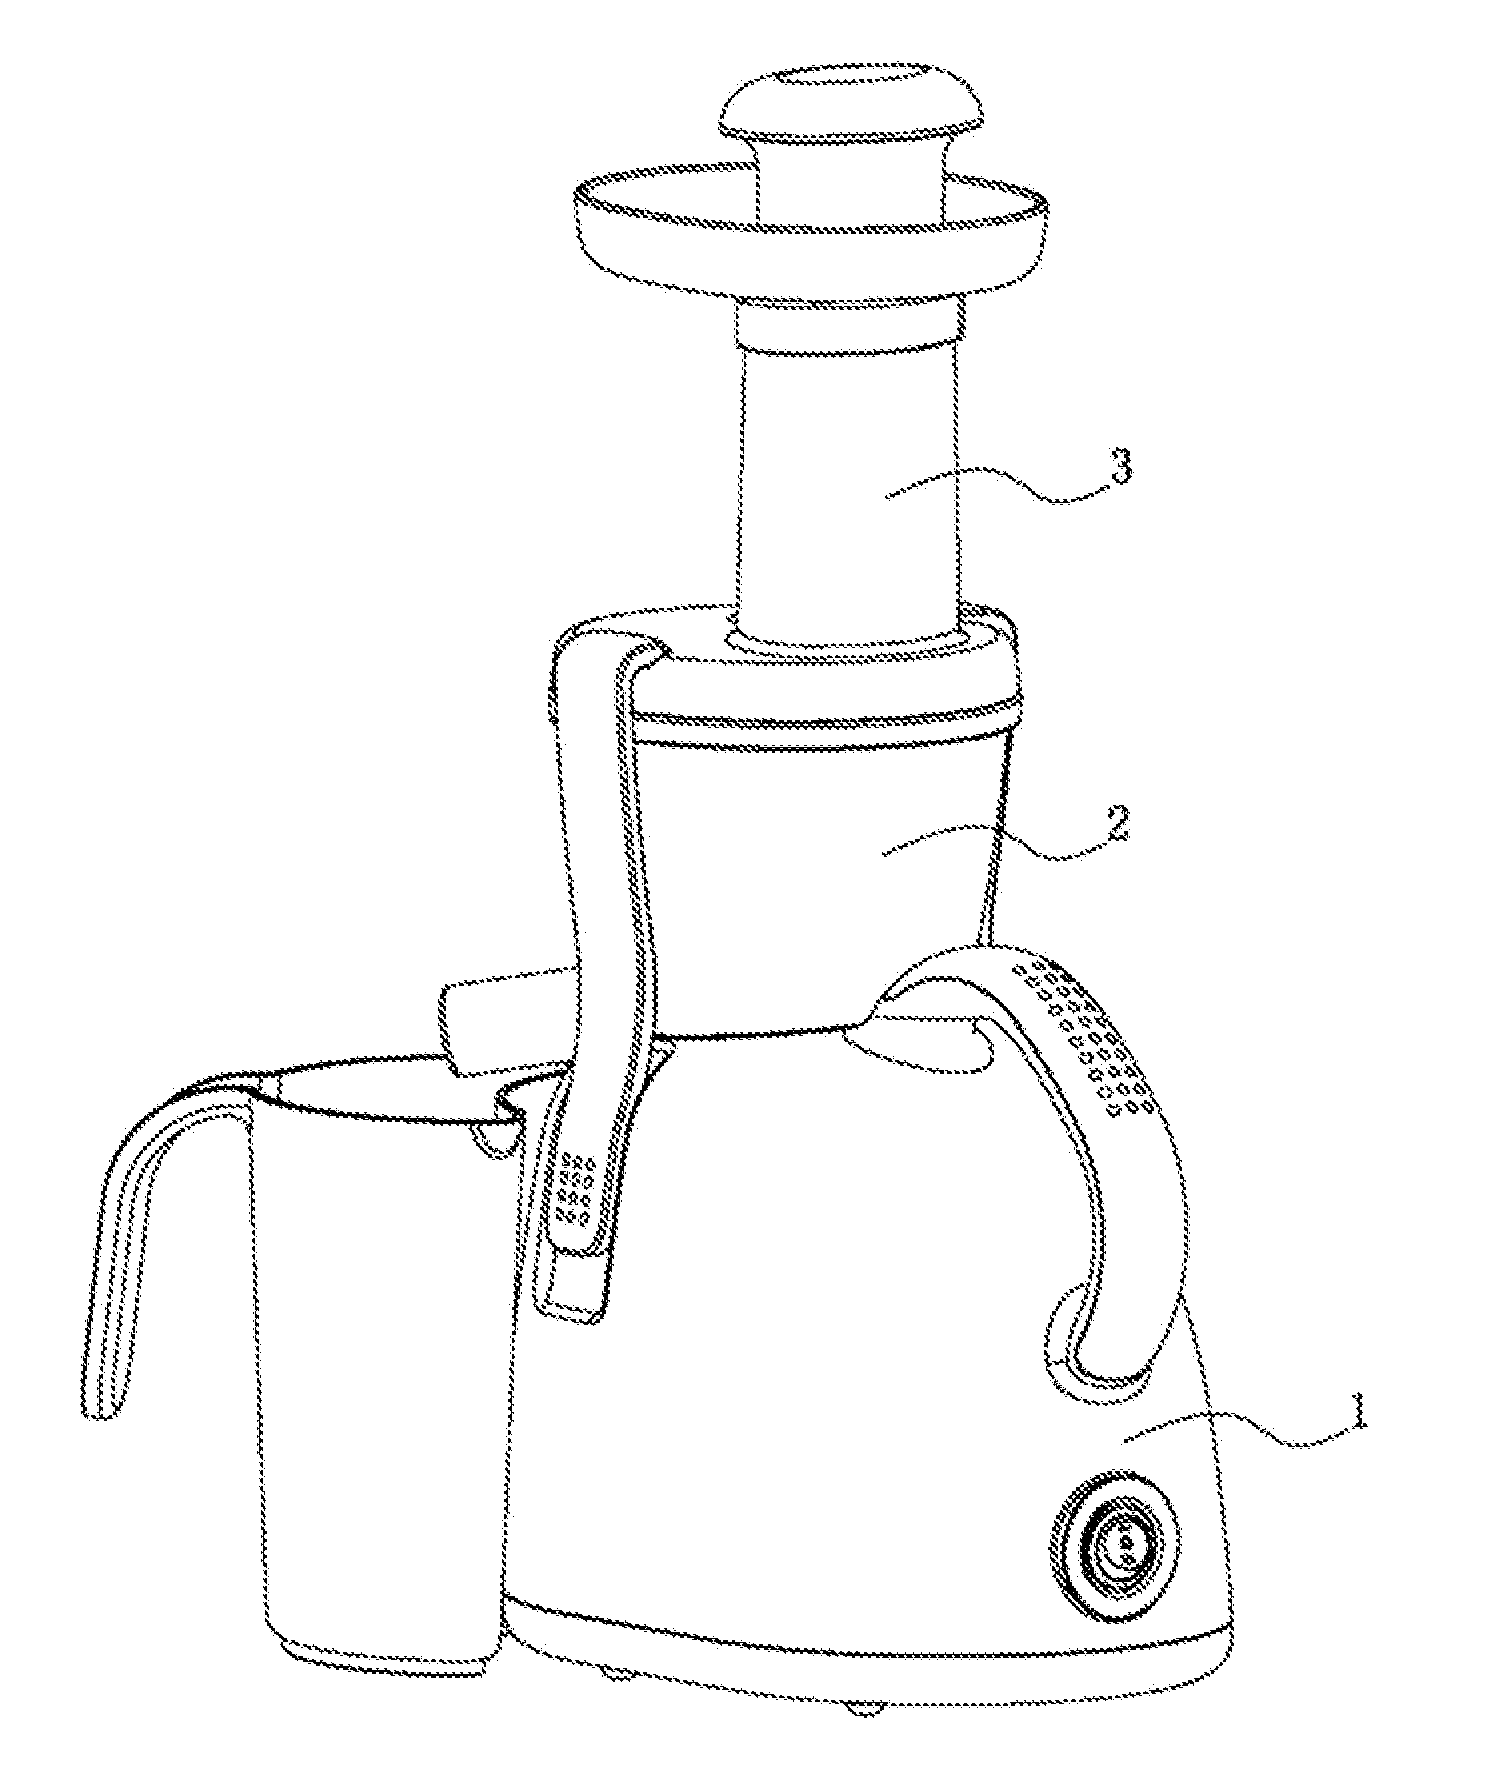 Squeeze-type juice extractor